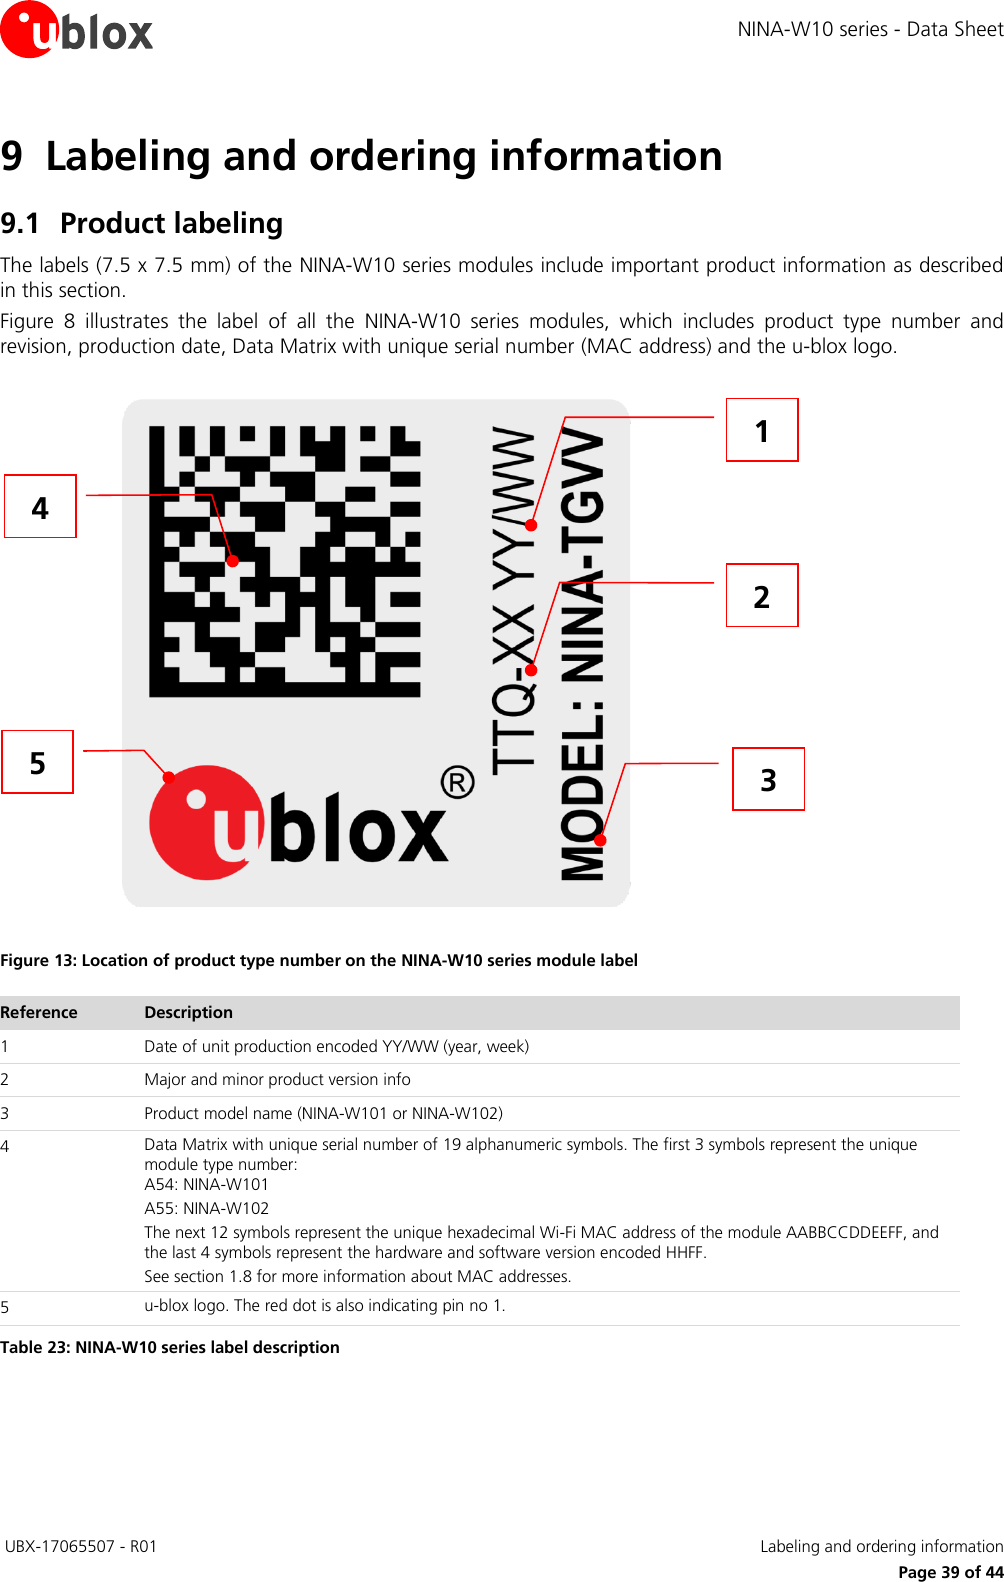 Page 39 of u blox NINAW10 Wireless Communication System Module User Manual NINA W10 series